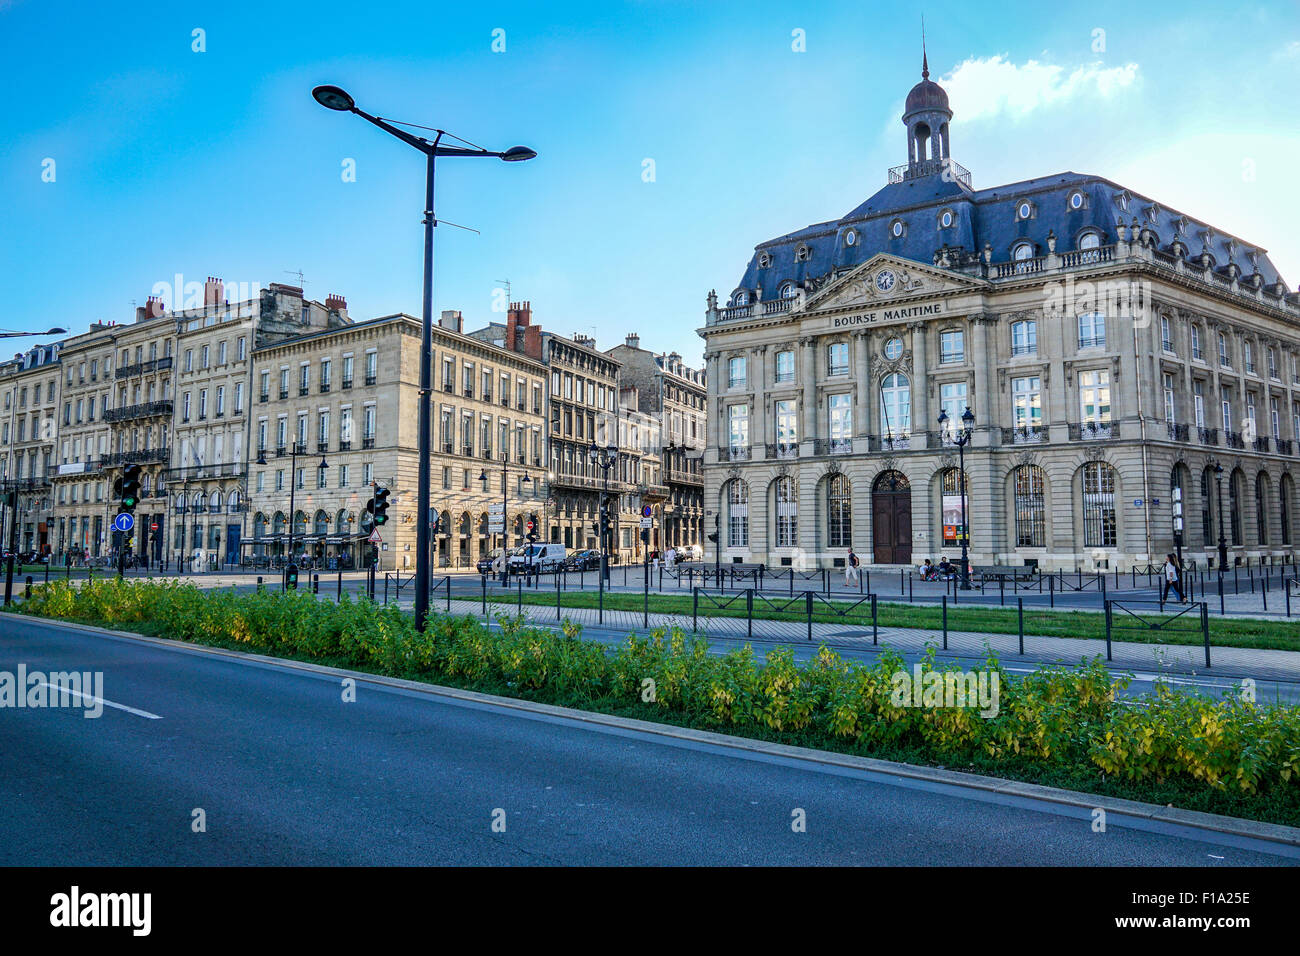 BORDEAUX, FRANCE, August 28, 2015 : Bordeaux is European Best Destination in 2015 - The Bourse Maritime Marine Exchange Monument Stock Photo